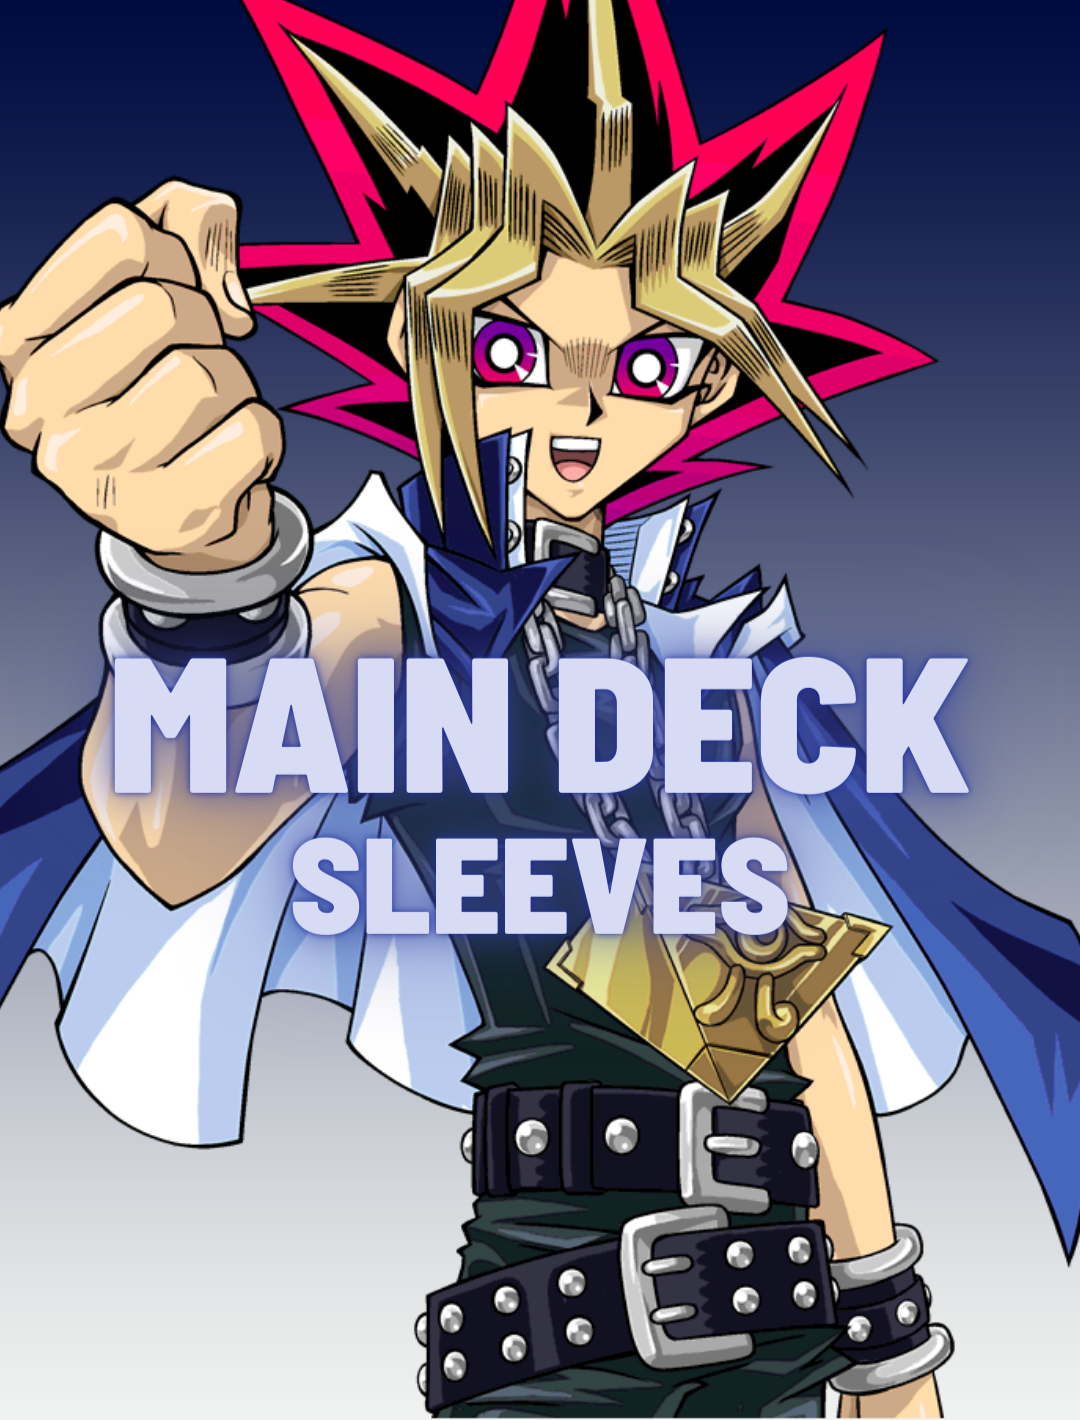 Main deck sleeves